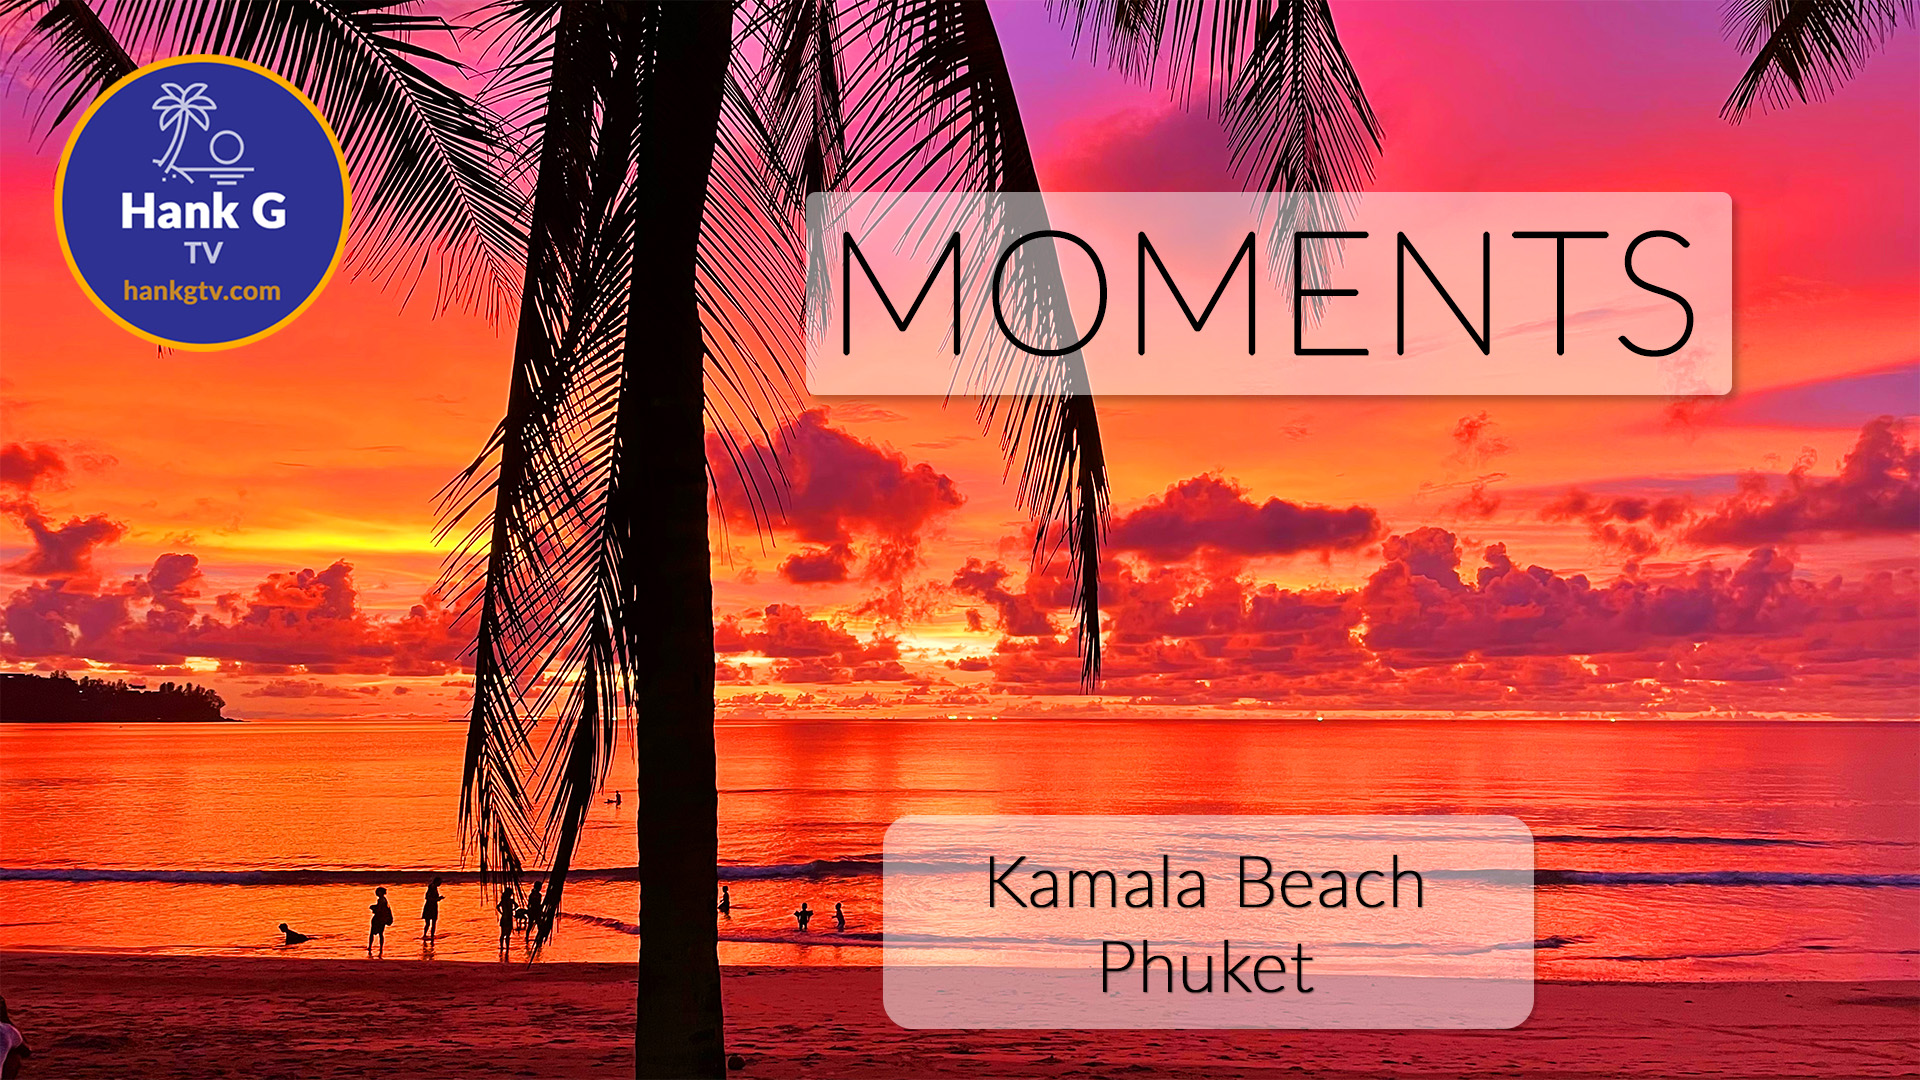 Phuket-Kamala Beach